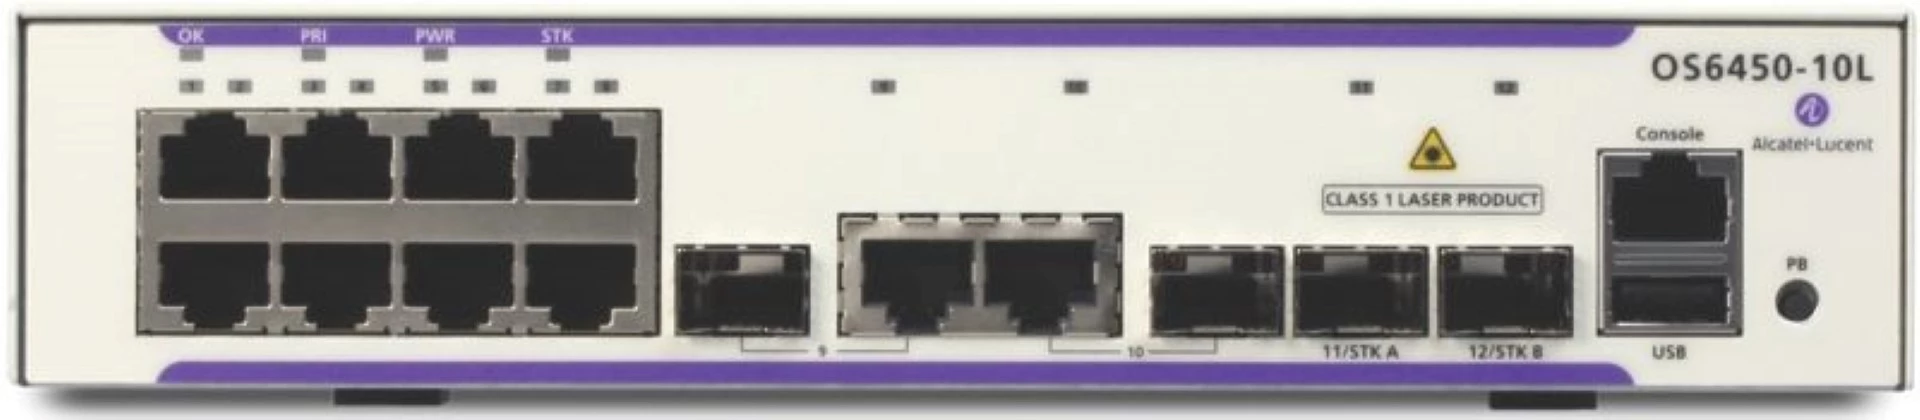 Alcatel-Lucent OmniSwitch 6450-10 WebSmart Gigabit Ethernet LAN Switch OS6450-10L